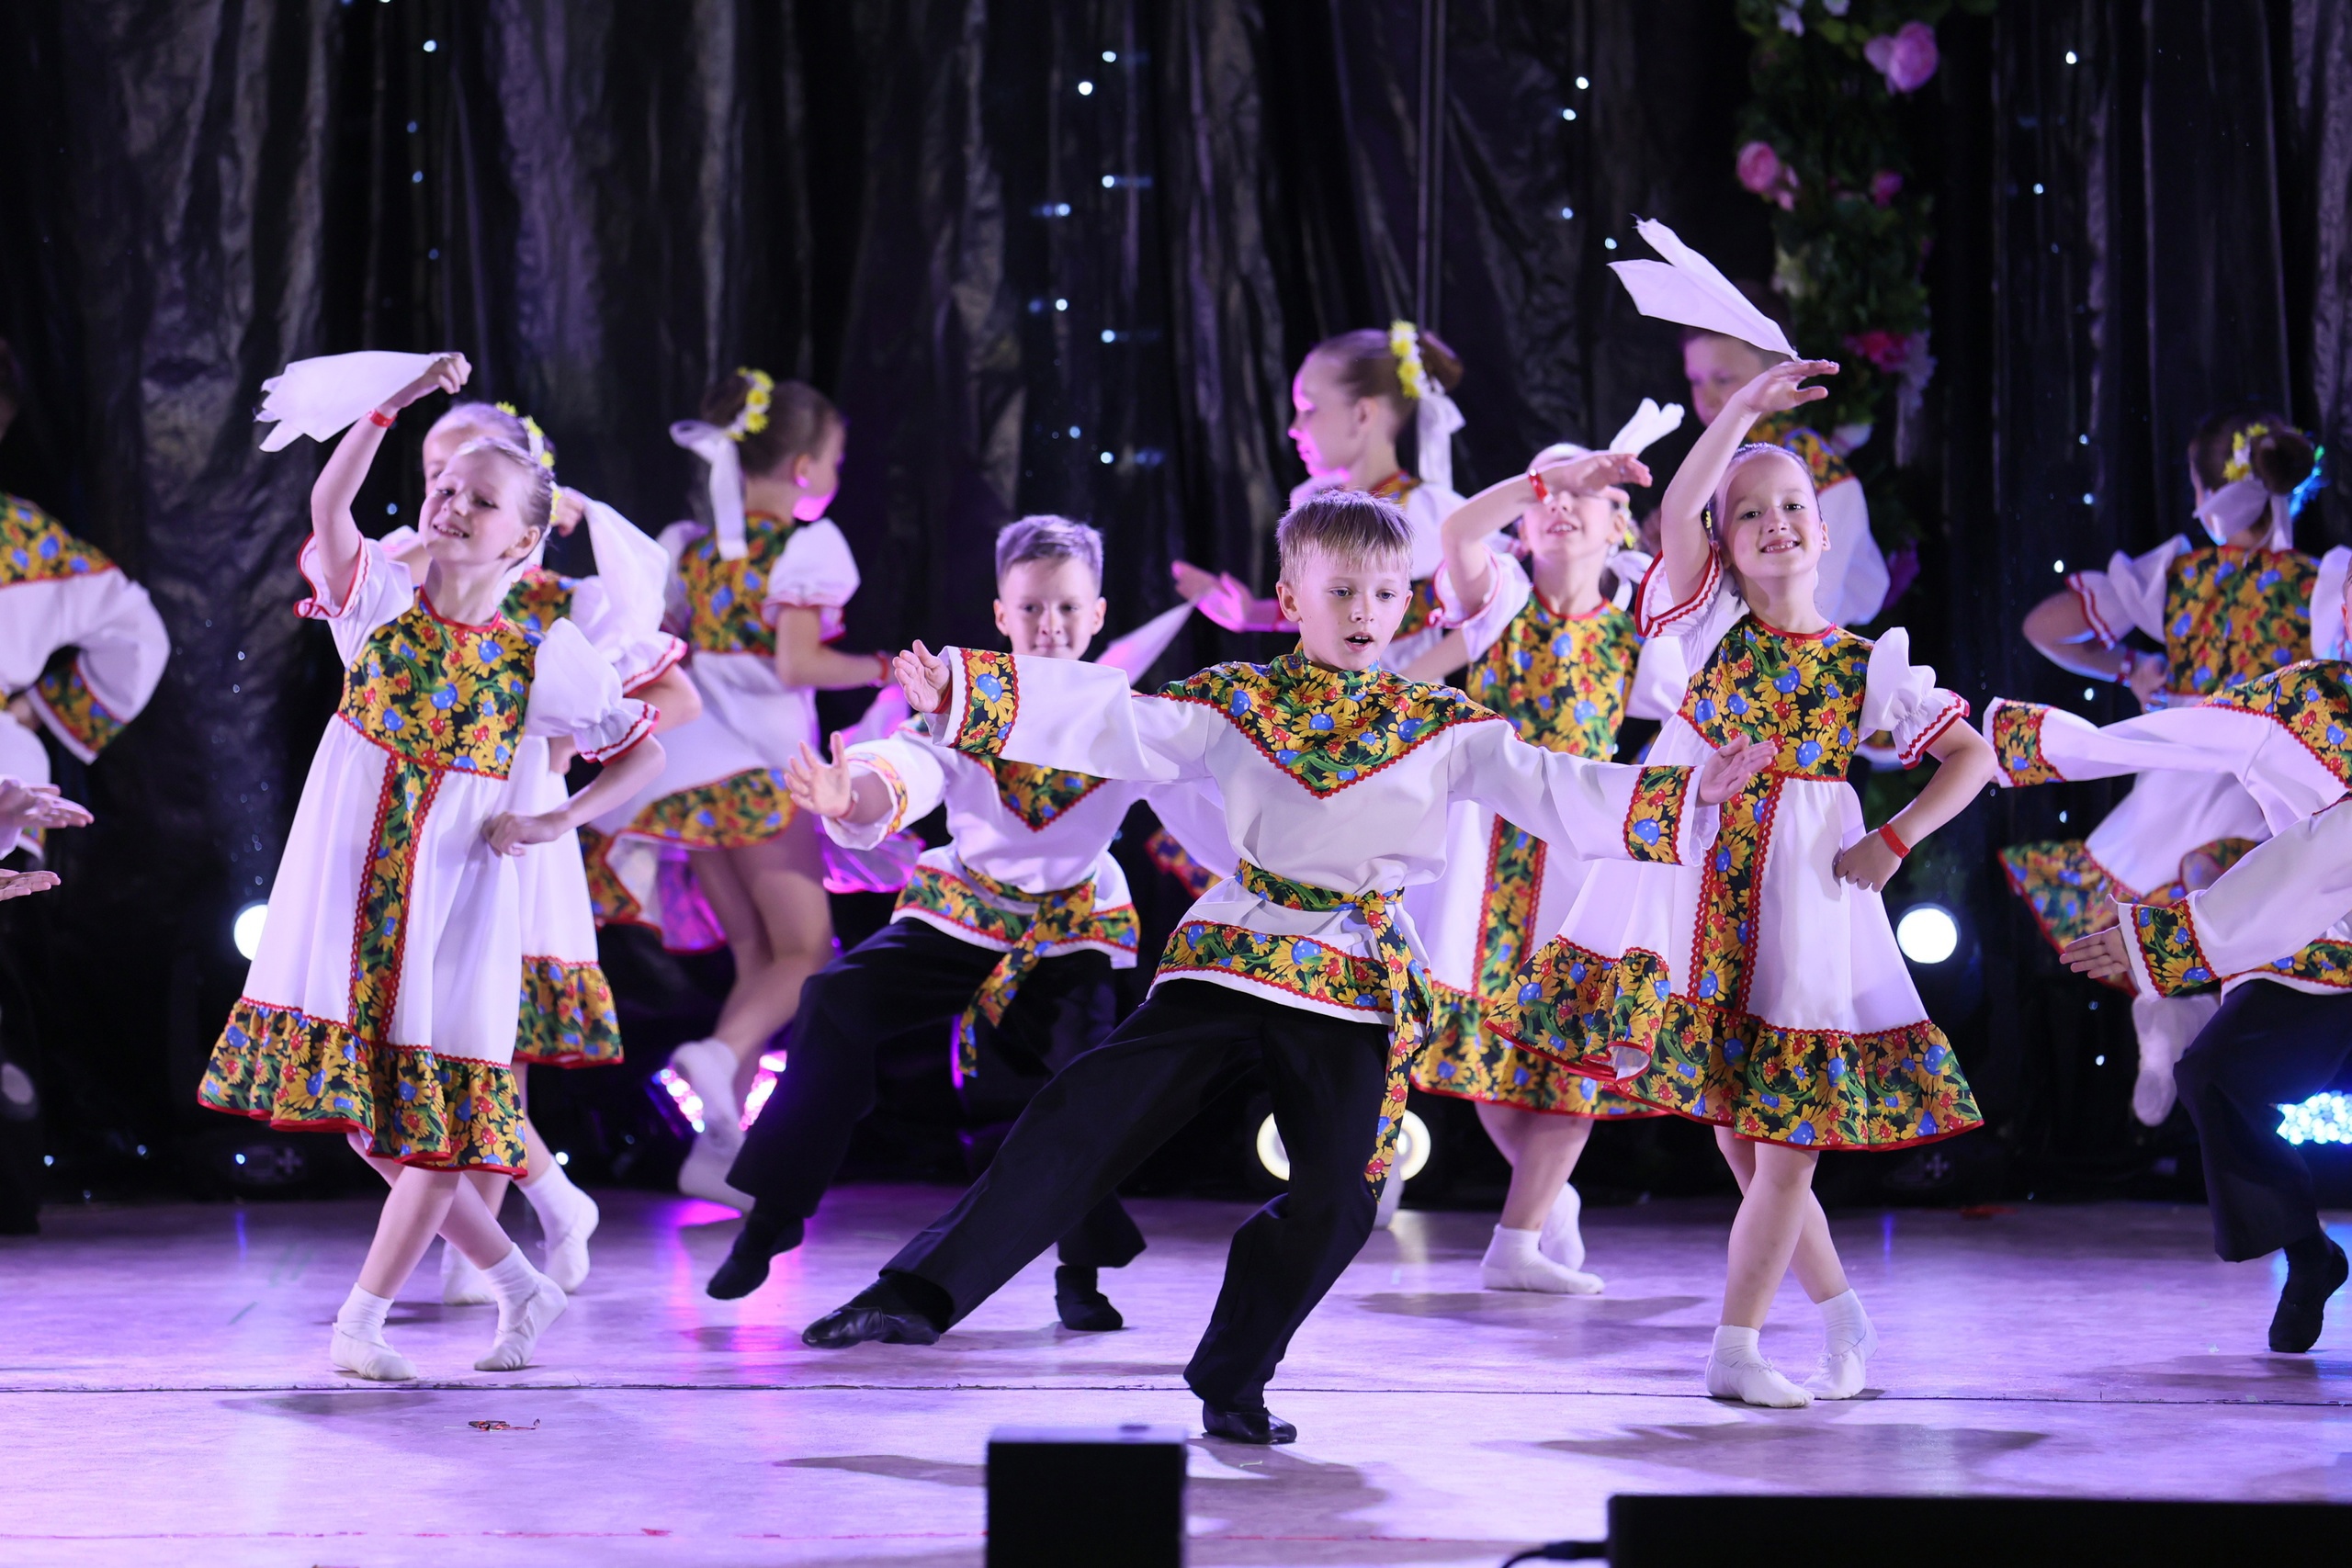 Руководитель образцового детского театра танца «Самарка» Людмила Попкова: «Творчество - смысл моей жизни»